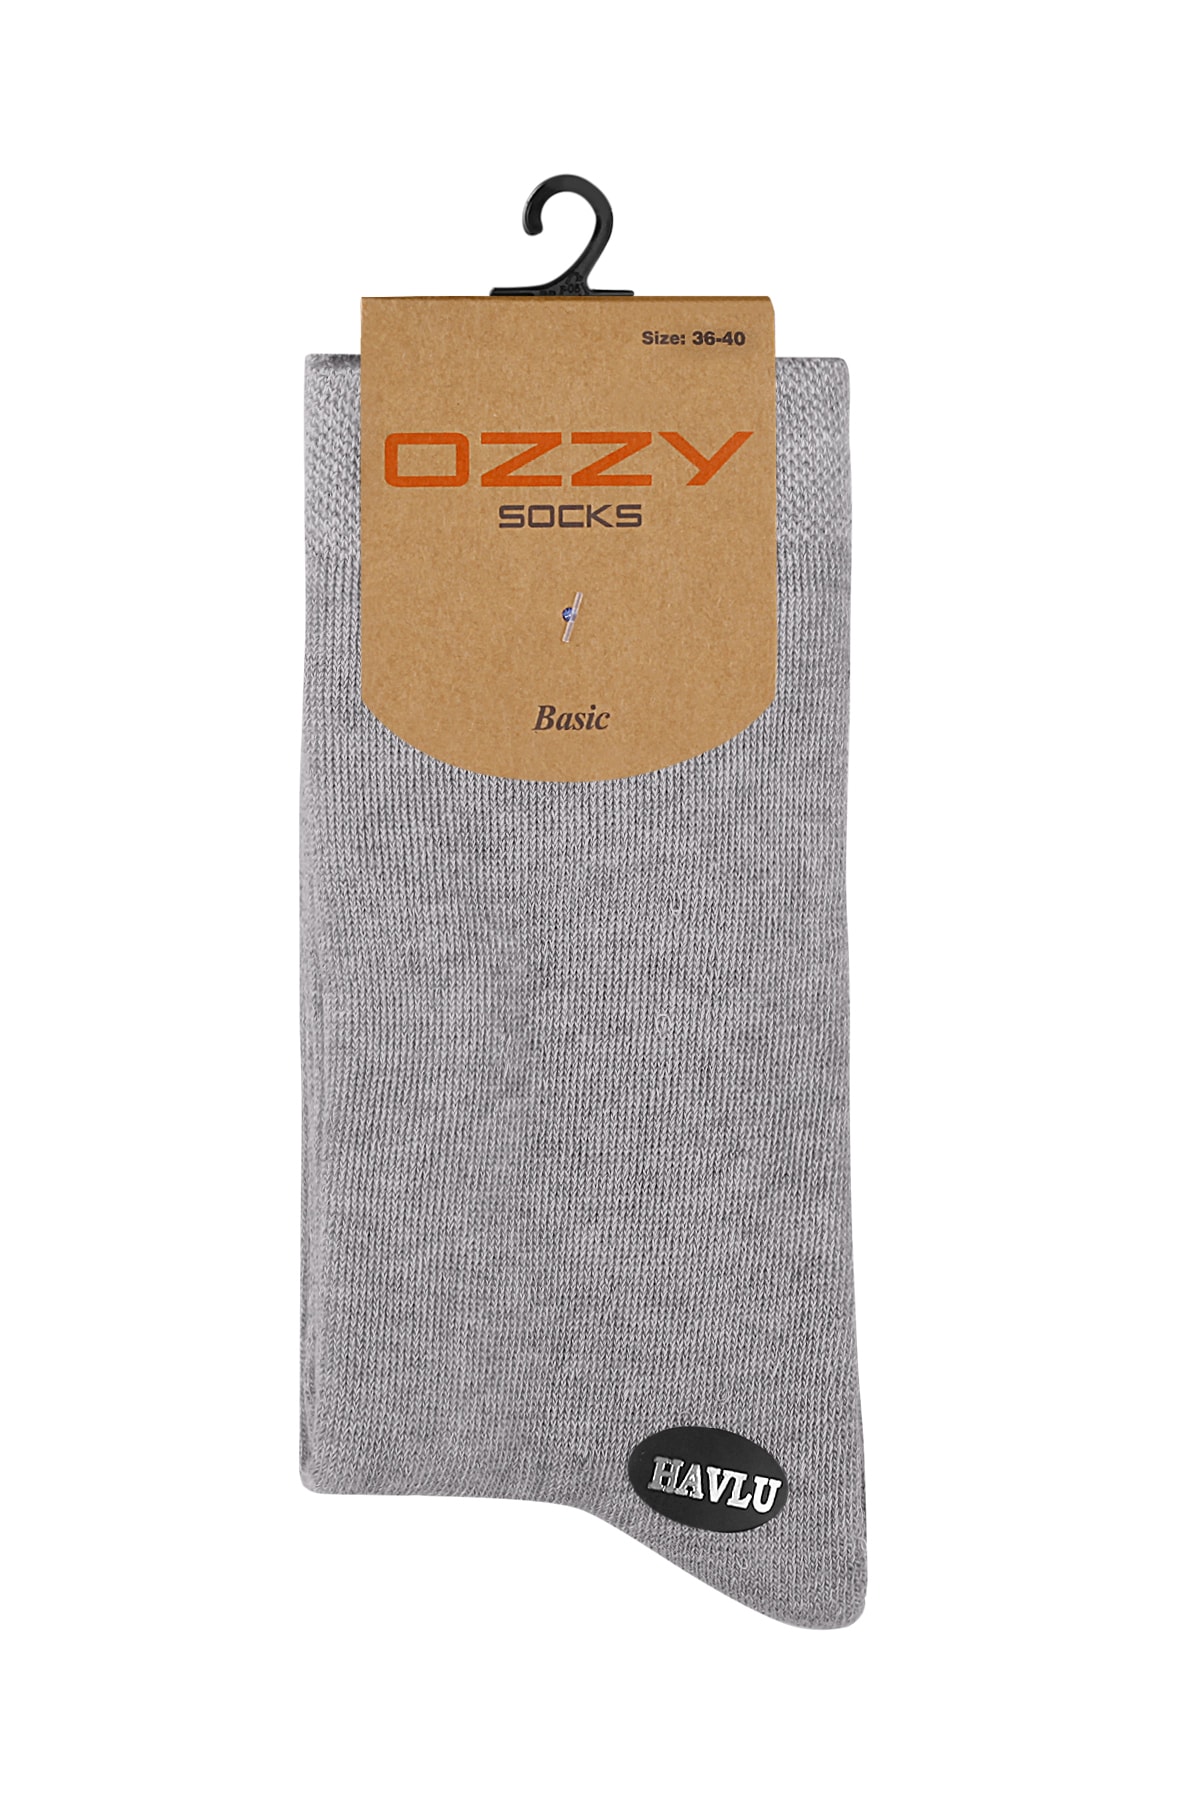 Ozzy Socks 8 Çift Kadın Havlu Soket Çorap Kışlık Dayanıklı Topuk Ve Burun PH10476